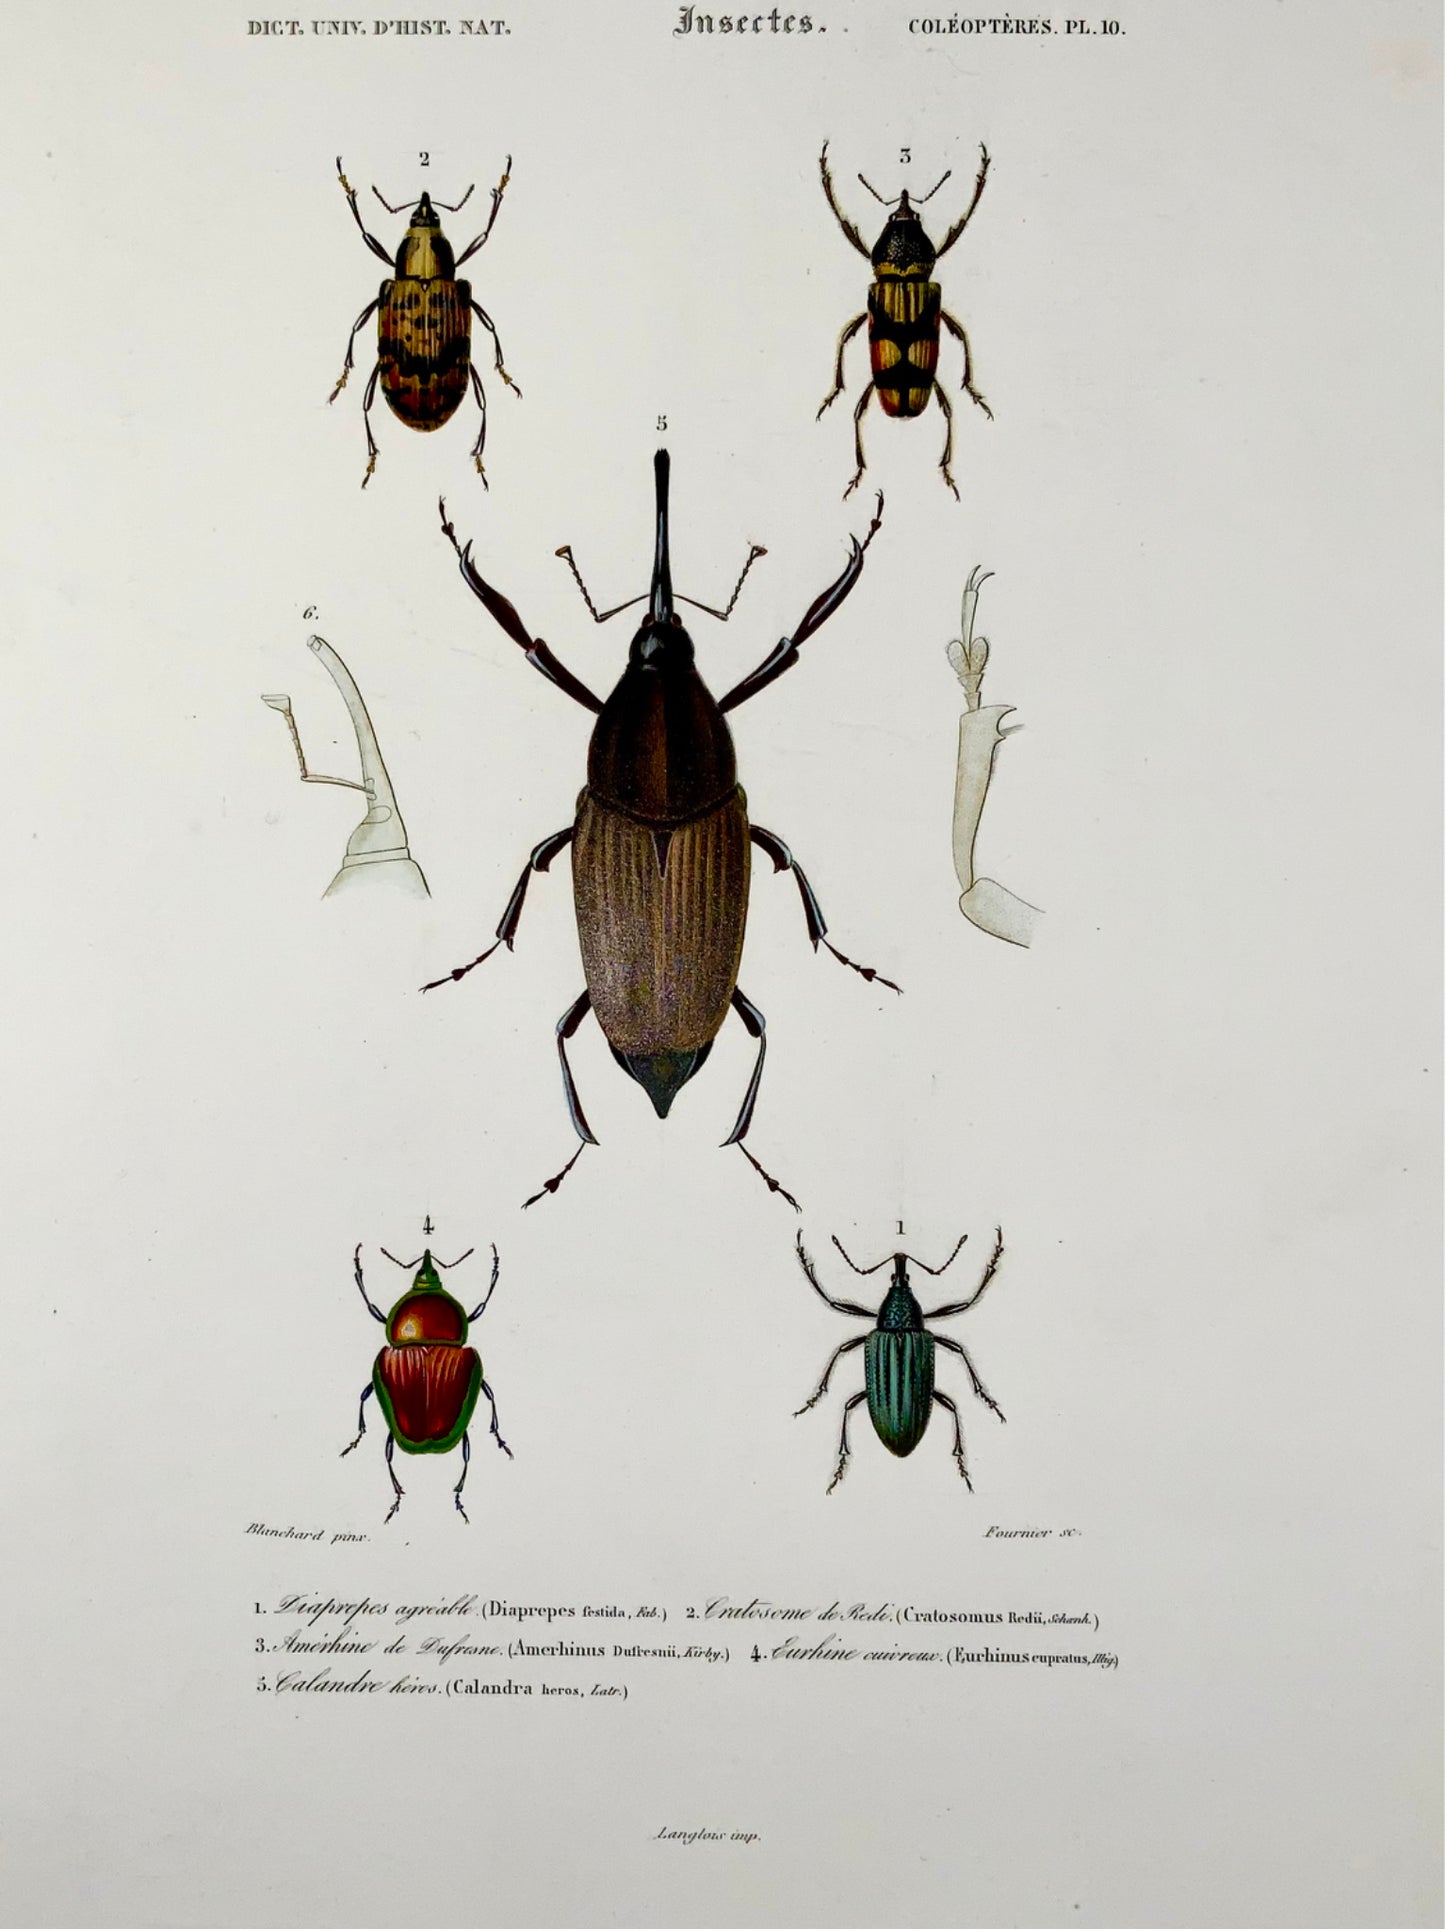 1849 Fournier, Blanchard, Coleotteri, squisito colore a mano, foglio, insetti